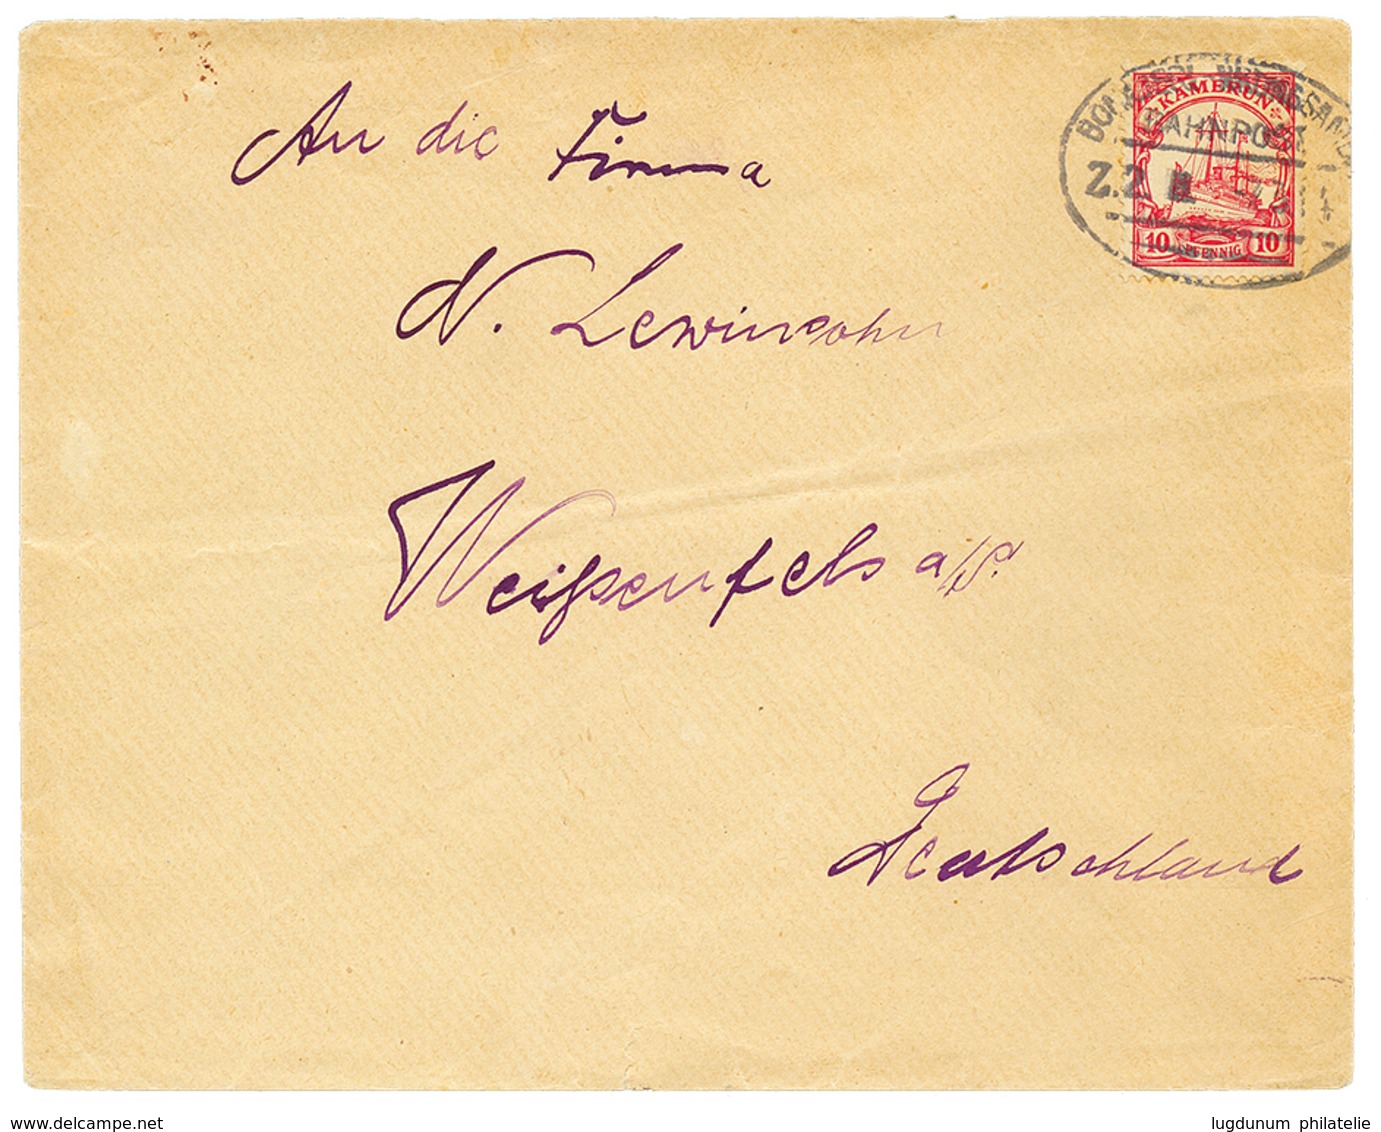 1092 1914 10pf Canc. BONABERI-NKONSAMBA/BAHNPOST/Z.2 On Envelope To GERMANY. Signed EIBENSTEIN. Vf. - Kamerun